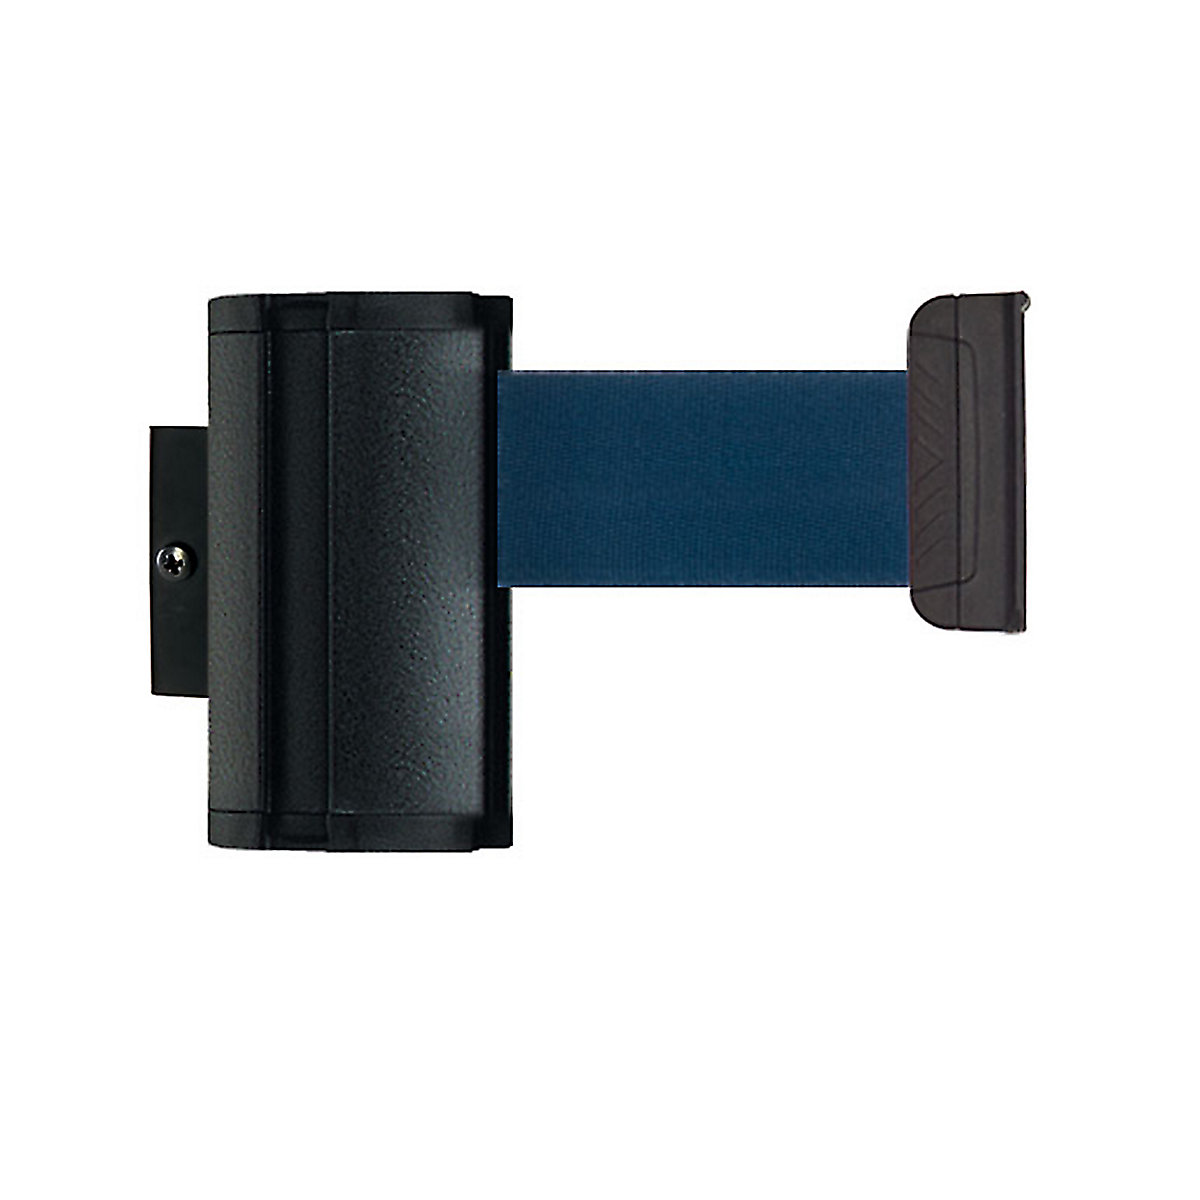 Wall Mount tape belt cartridge, belt extends to max. 2300 mm, belt colour navy-5